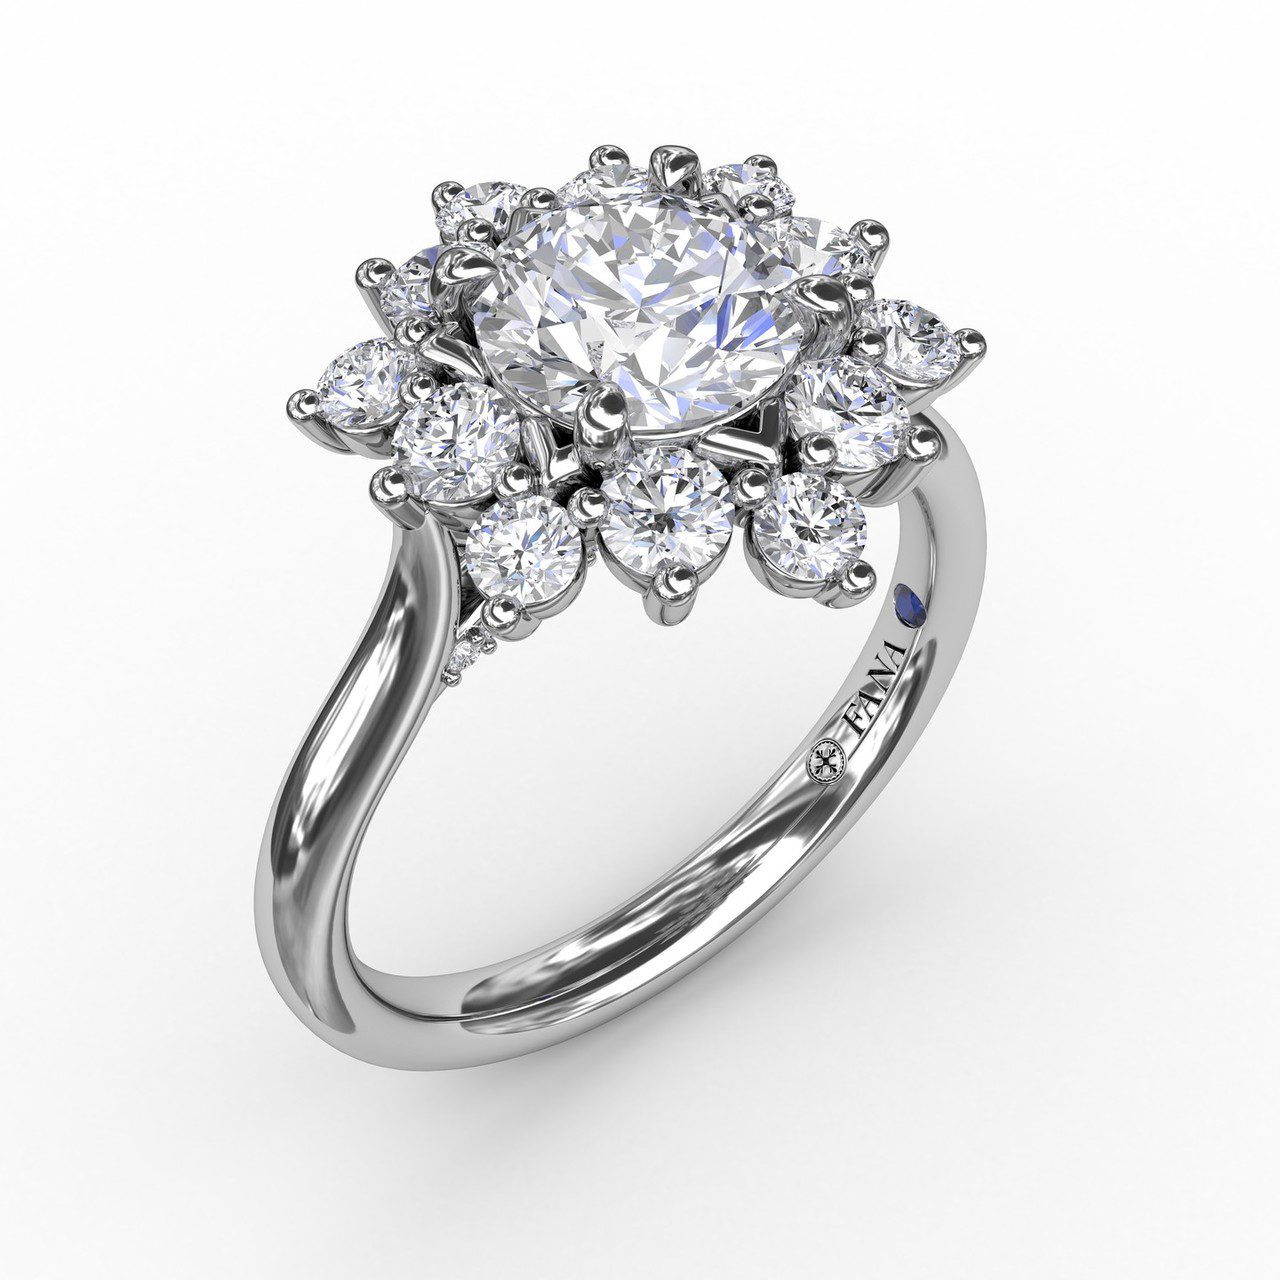 Buy Cluster Diamond Ring on 18k White Gold VS Diamonds Ring UK Size K BHS  Online in India - Etsy